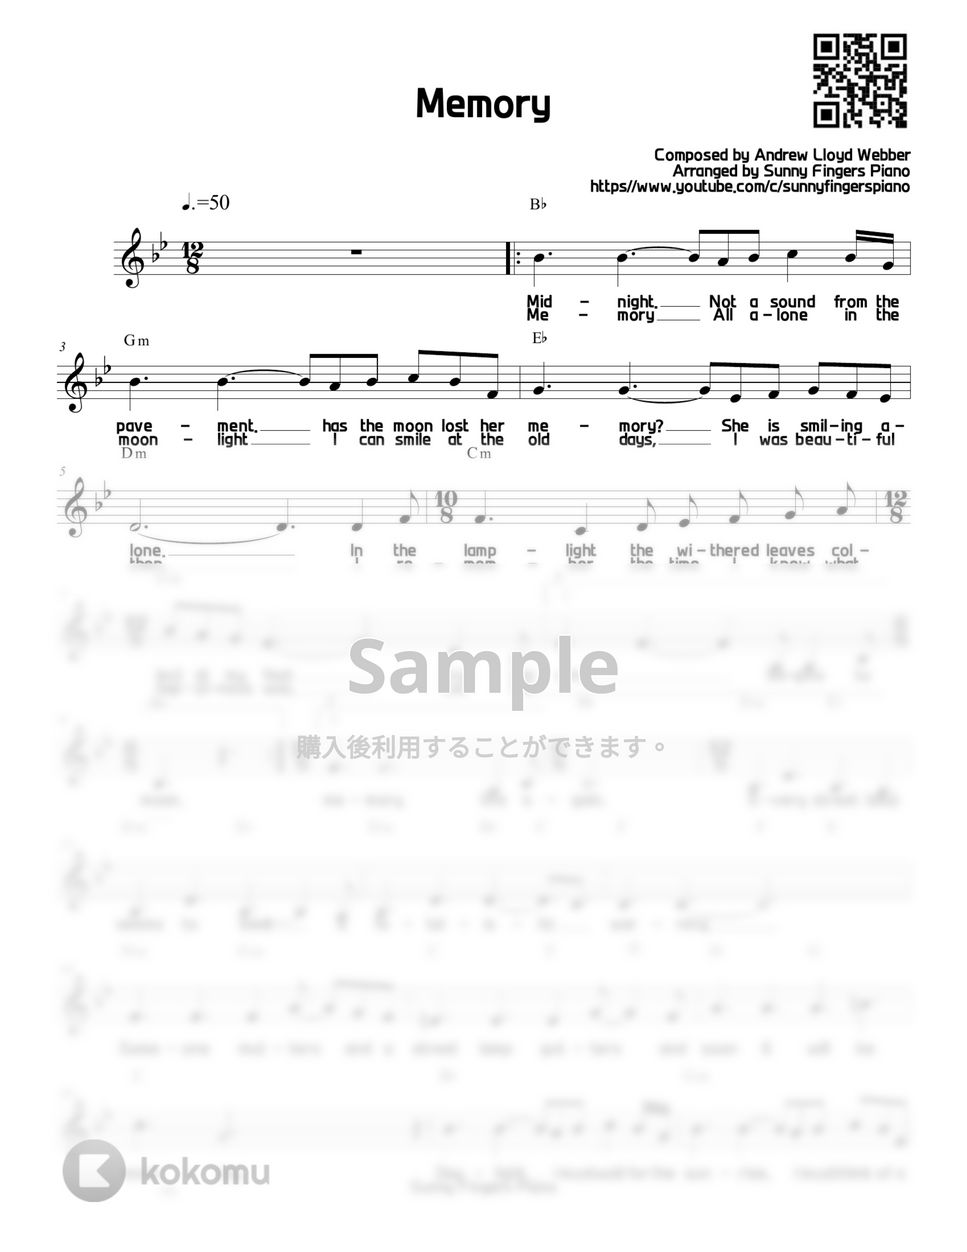 キャッツ - Memory (ボーカルのみ) by Sunny Fingers Piano